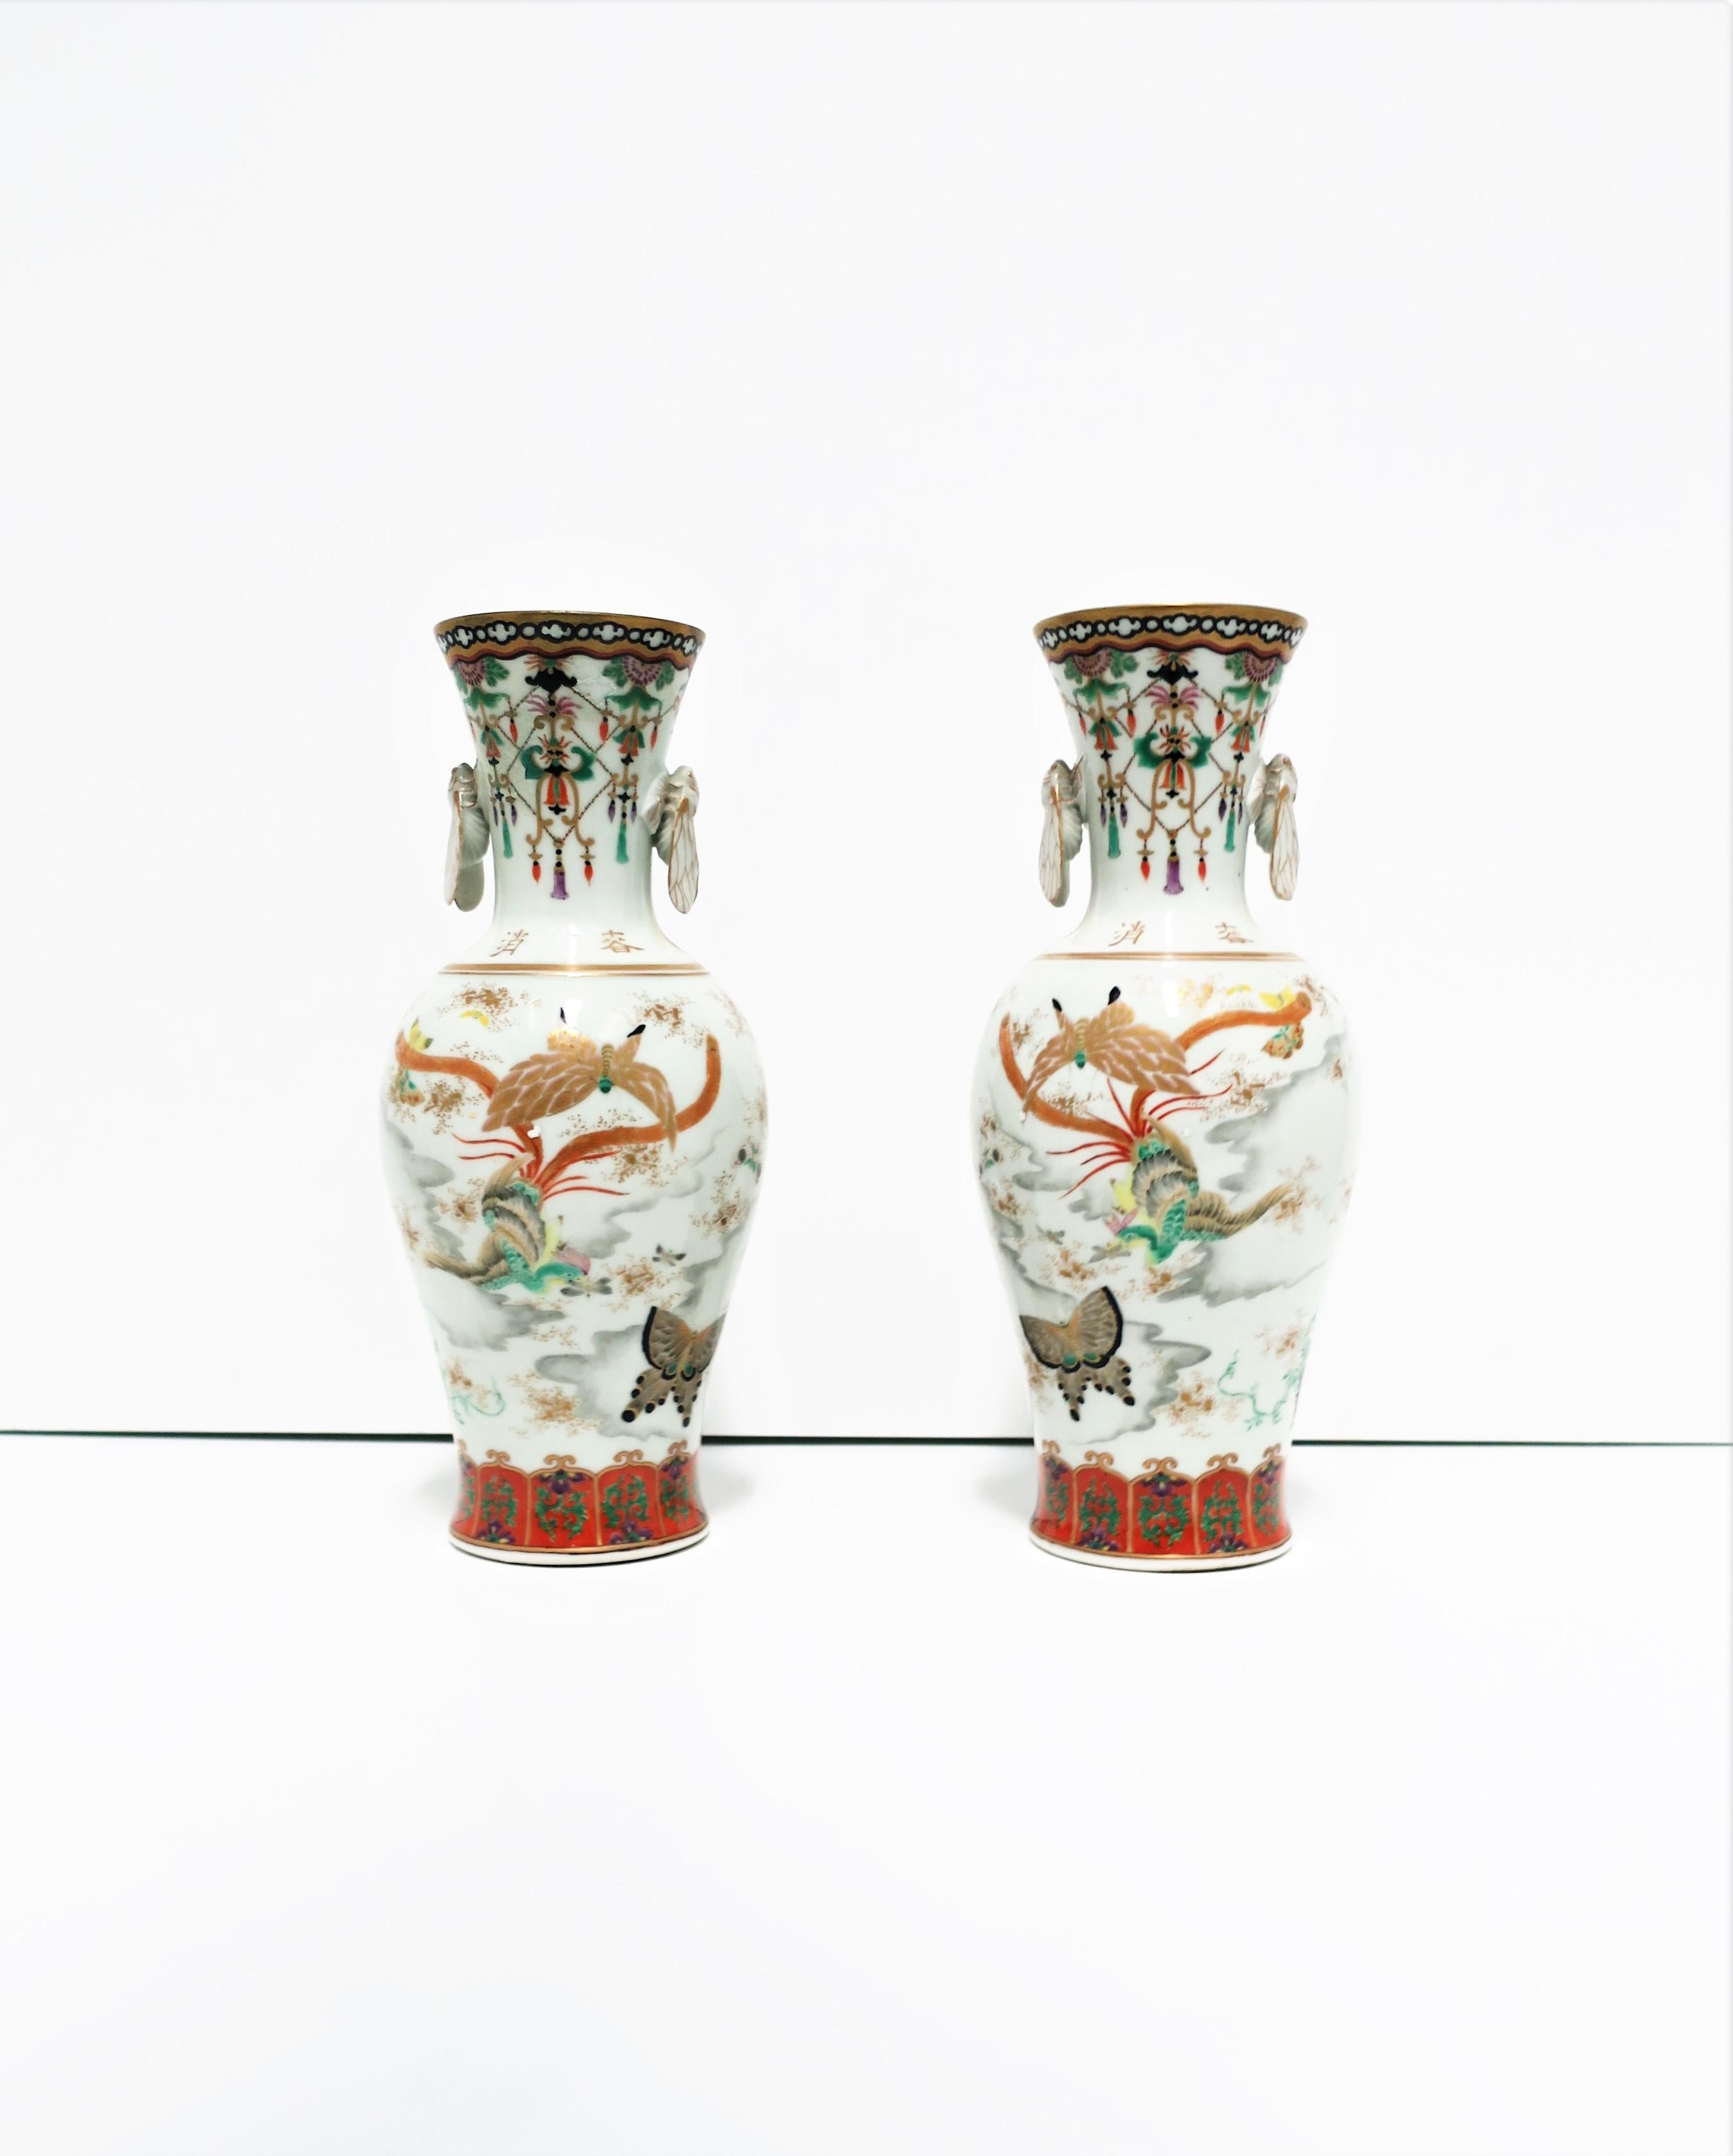 Une très belle paire de vases japonais en porcelaine Kutani polychromée, vers le début du 20e siècle, période Meiji, Japon. Les vases sont peints à la main et conçus avec deux faces différentes ; une face florale, l'autre avec des oiseaux et des